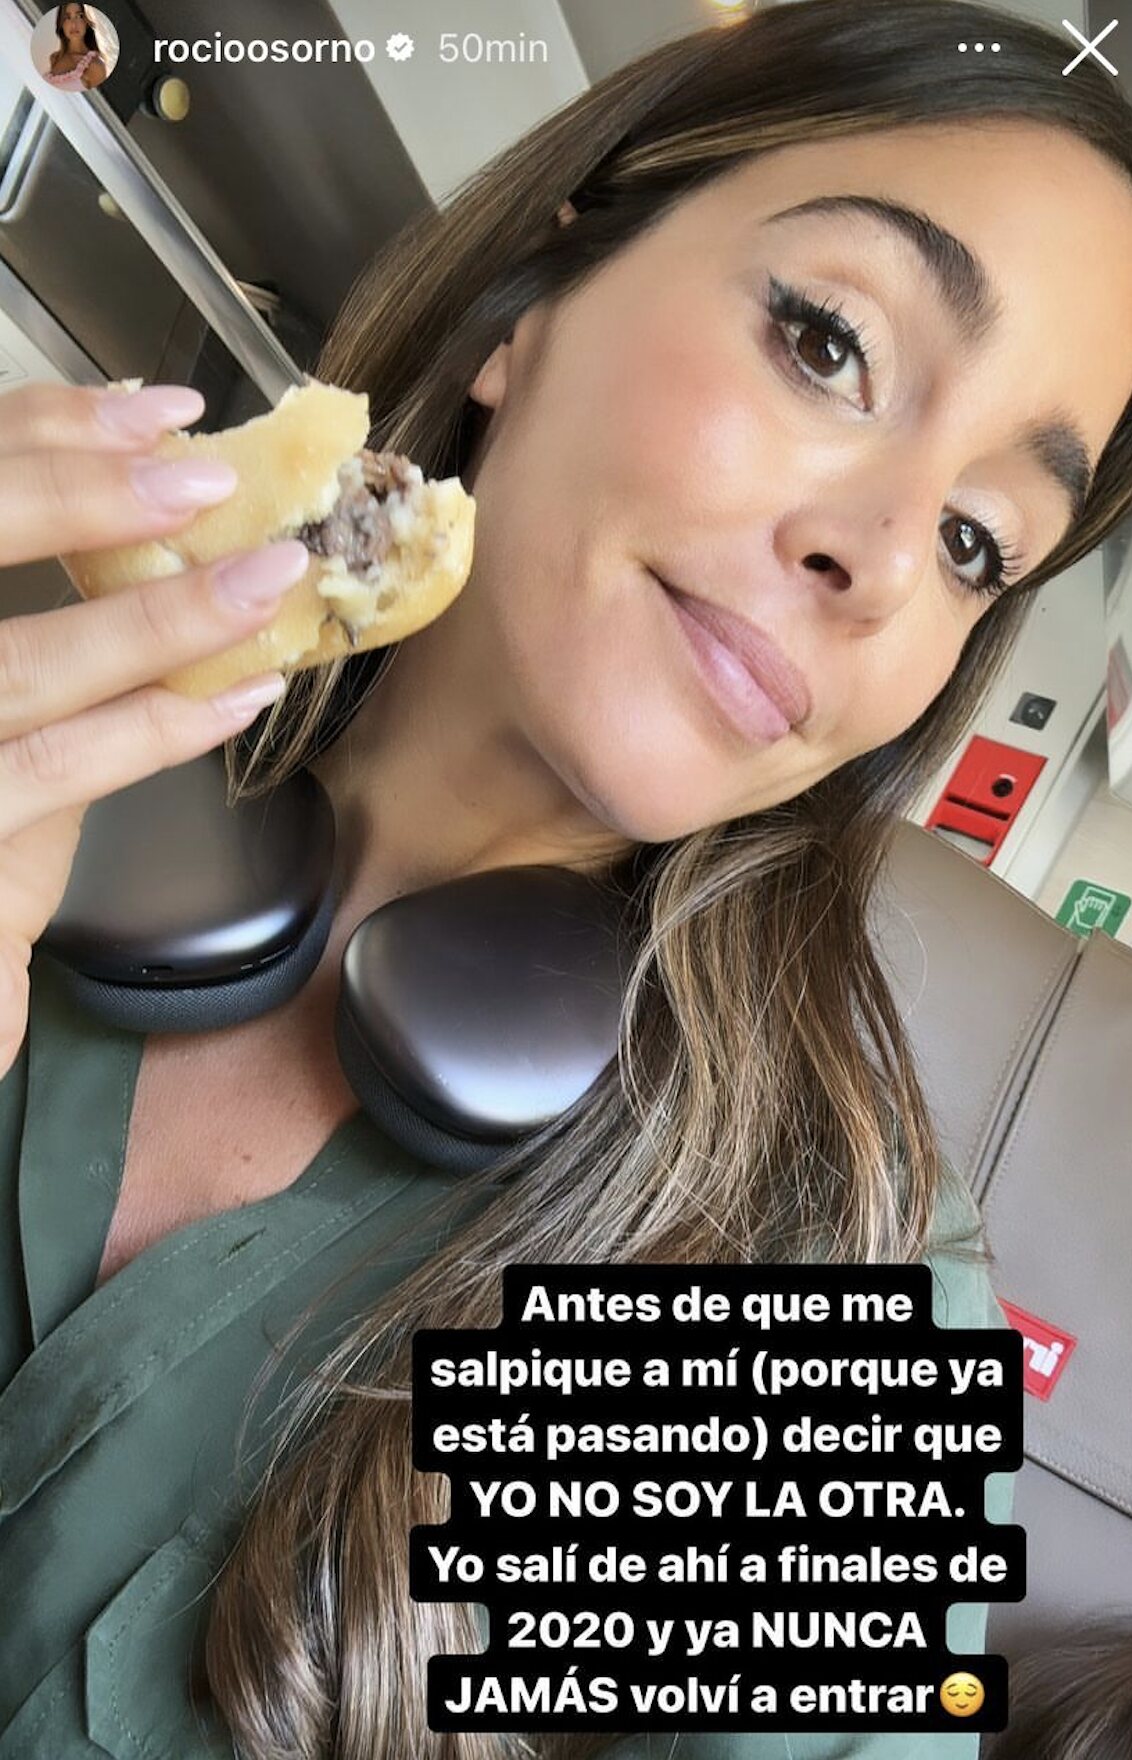 Rocío Osorno se pronuncia/ Foto: Instagram